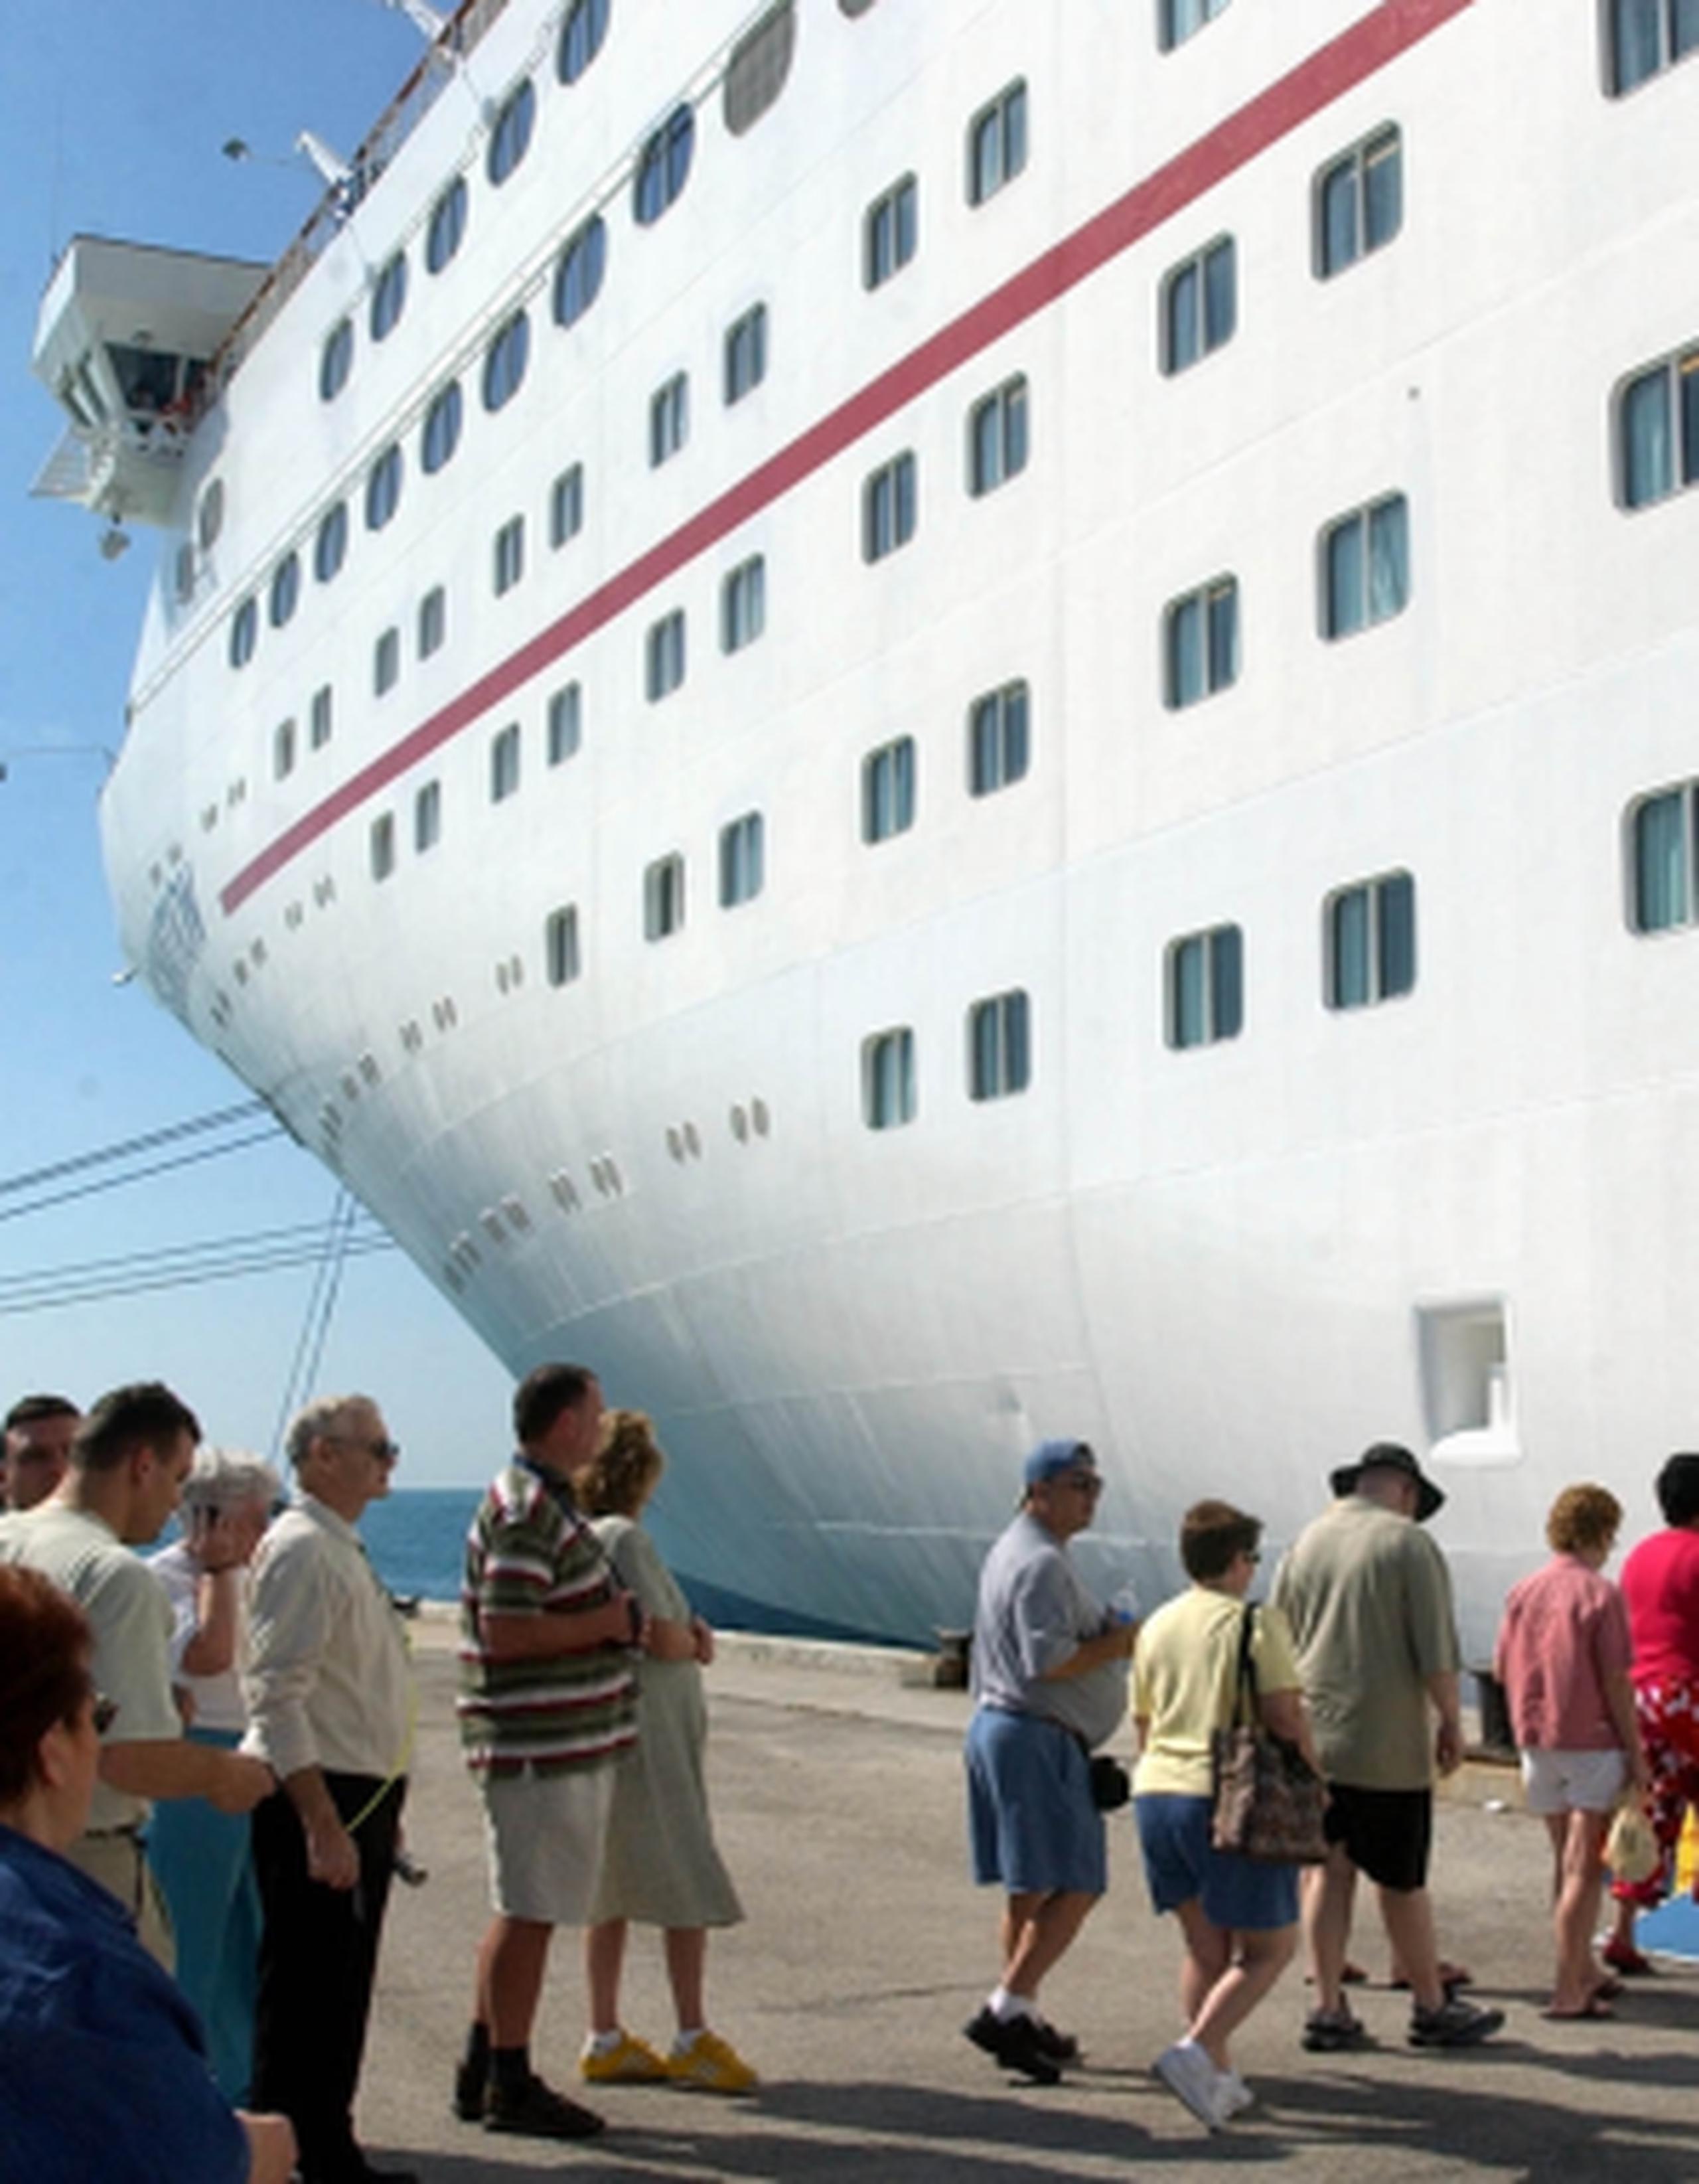 Los documentos publicados por las empresas de cruceros Carnival Corp., Royal Caribbean y Norwegian Cruise Line muestran que mucho más delitos fueron reportados al personal de seguridad de los que previamente fueron revelados. (Archivo)